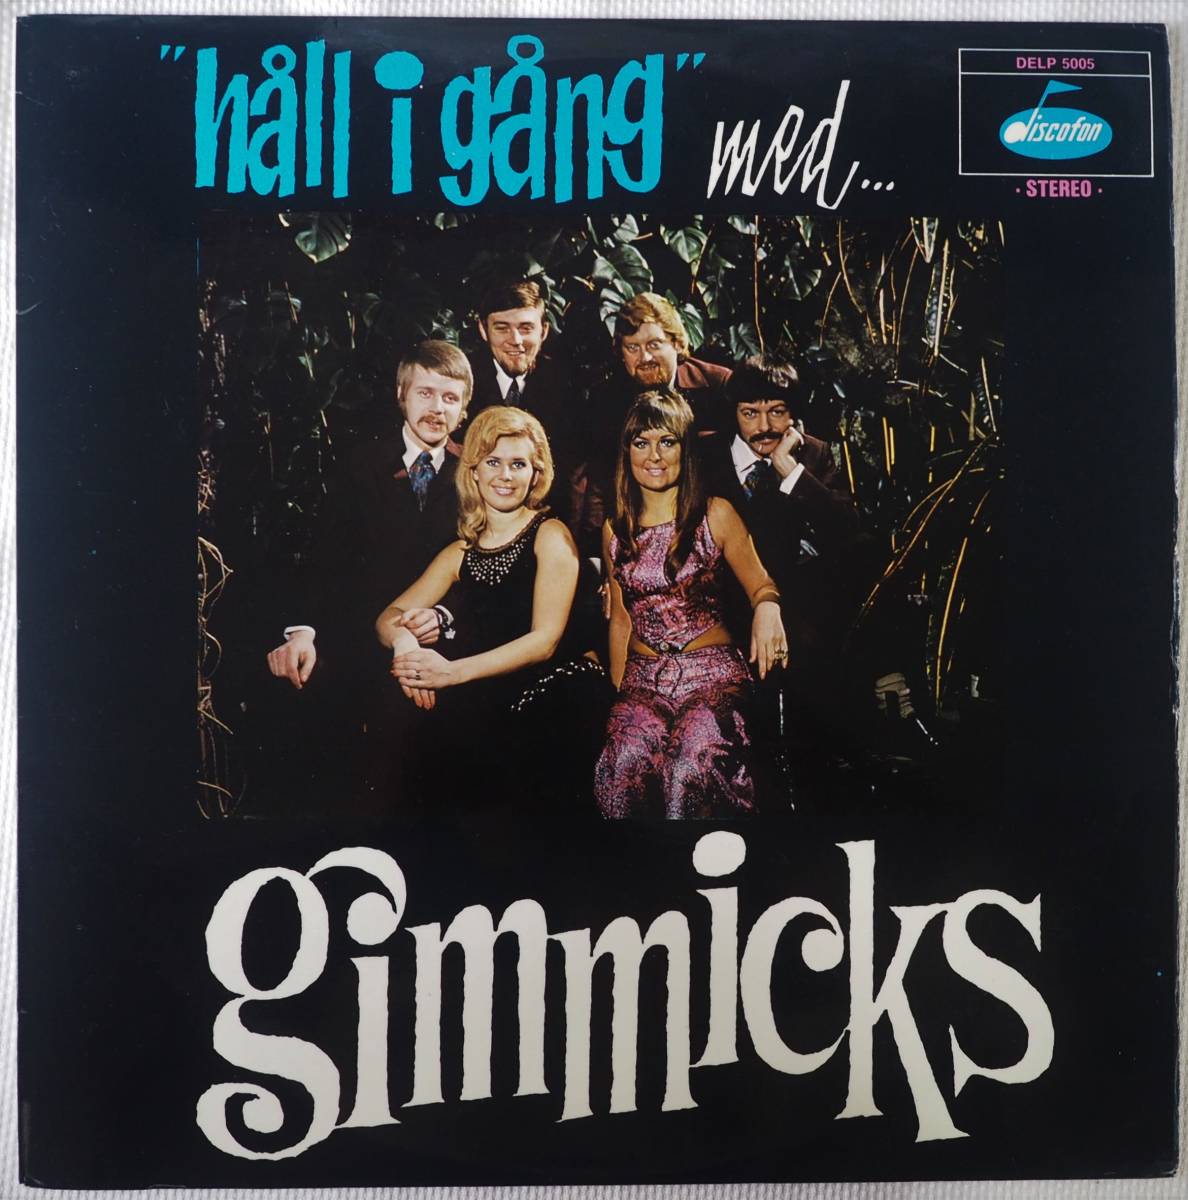 全国総量無料で / Gimmicks The Hall gang☆スウェーデン盤オリジナル I ボサノバ